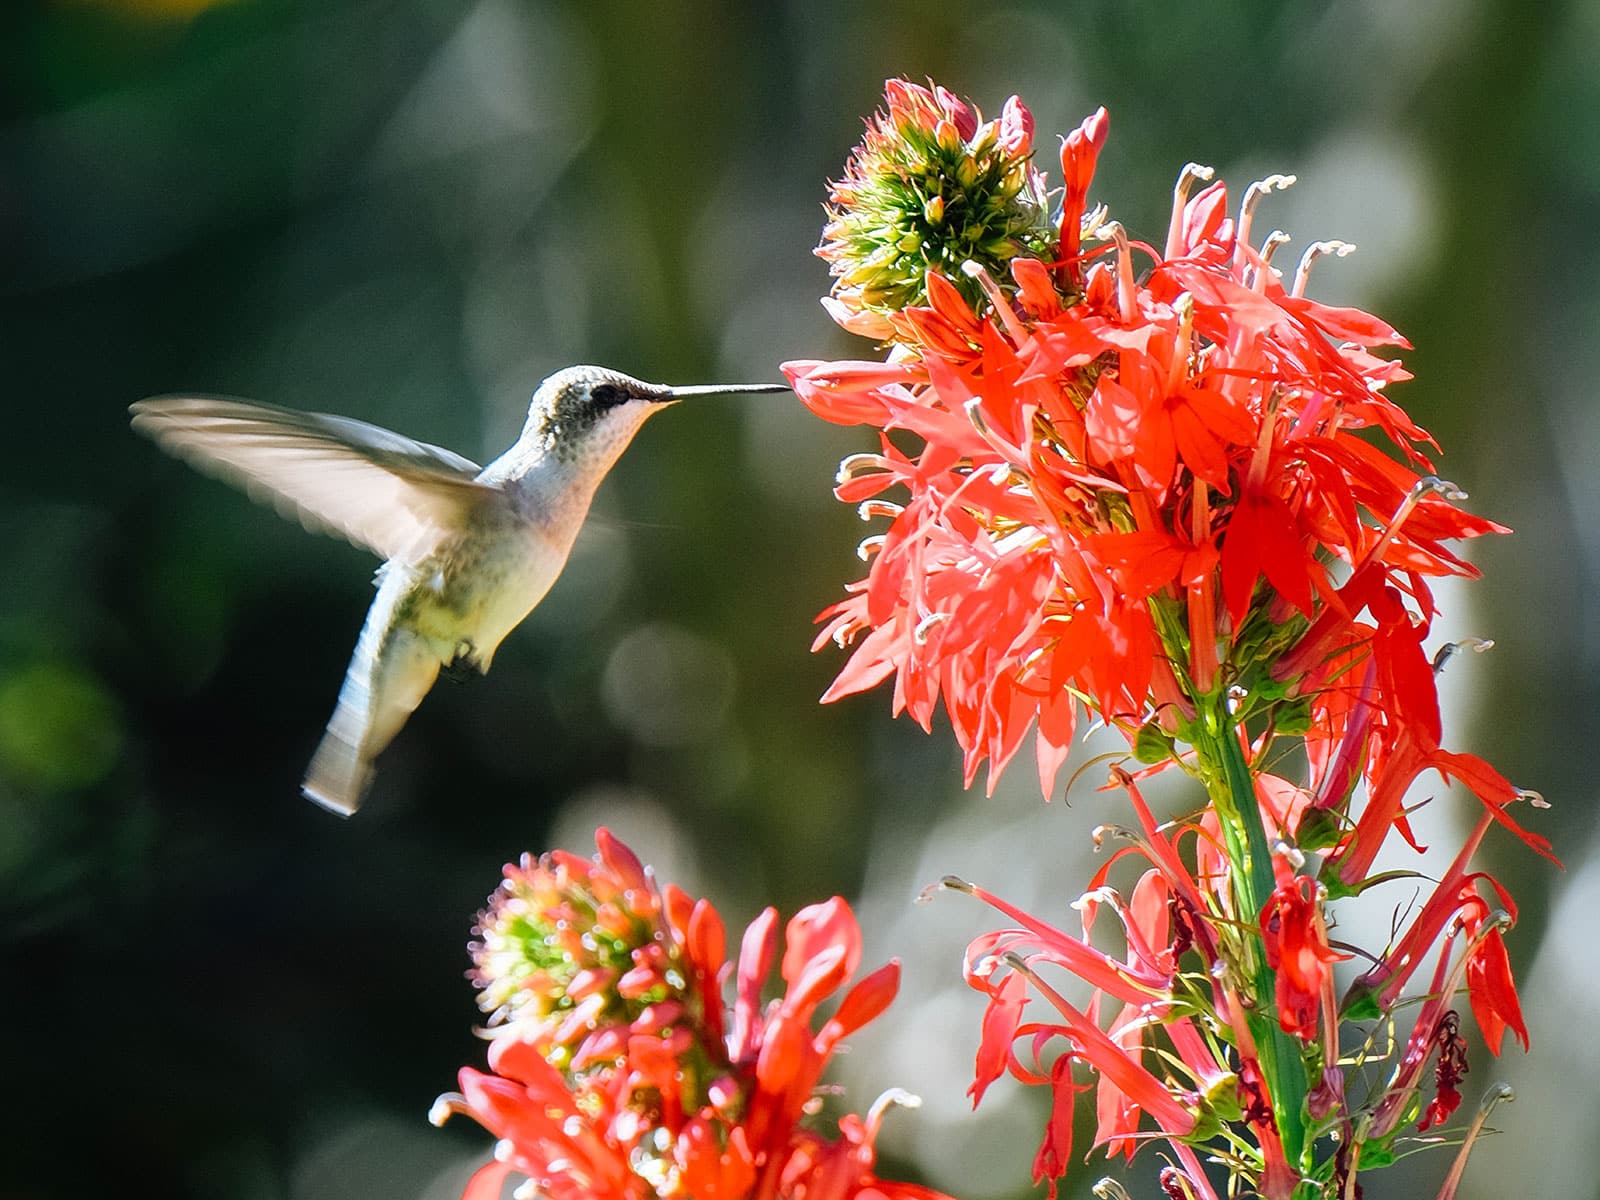 Hummingbird feeding on red lobelia flowers